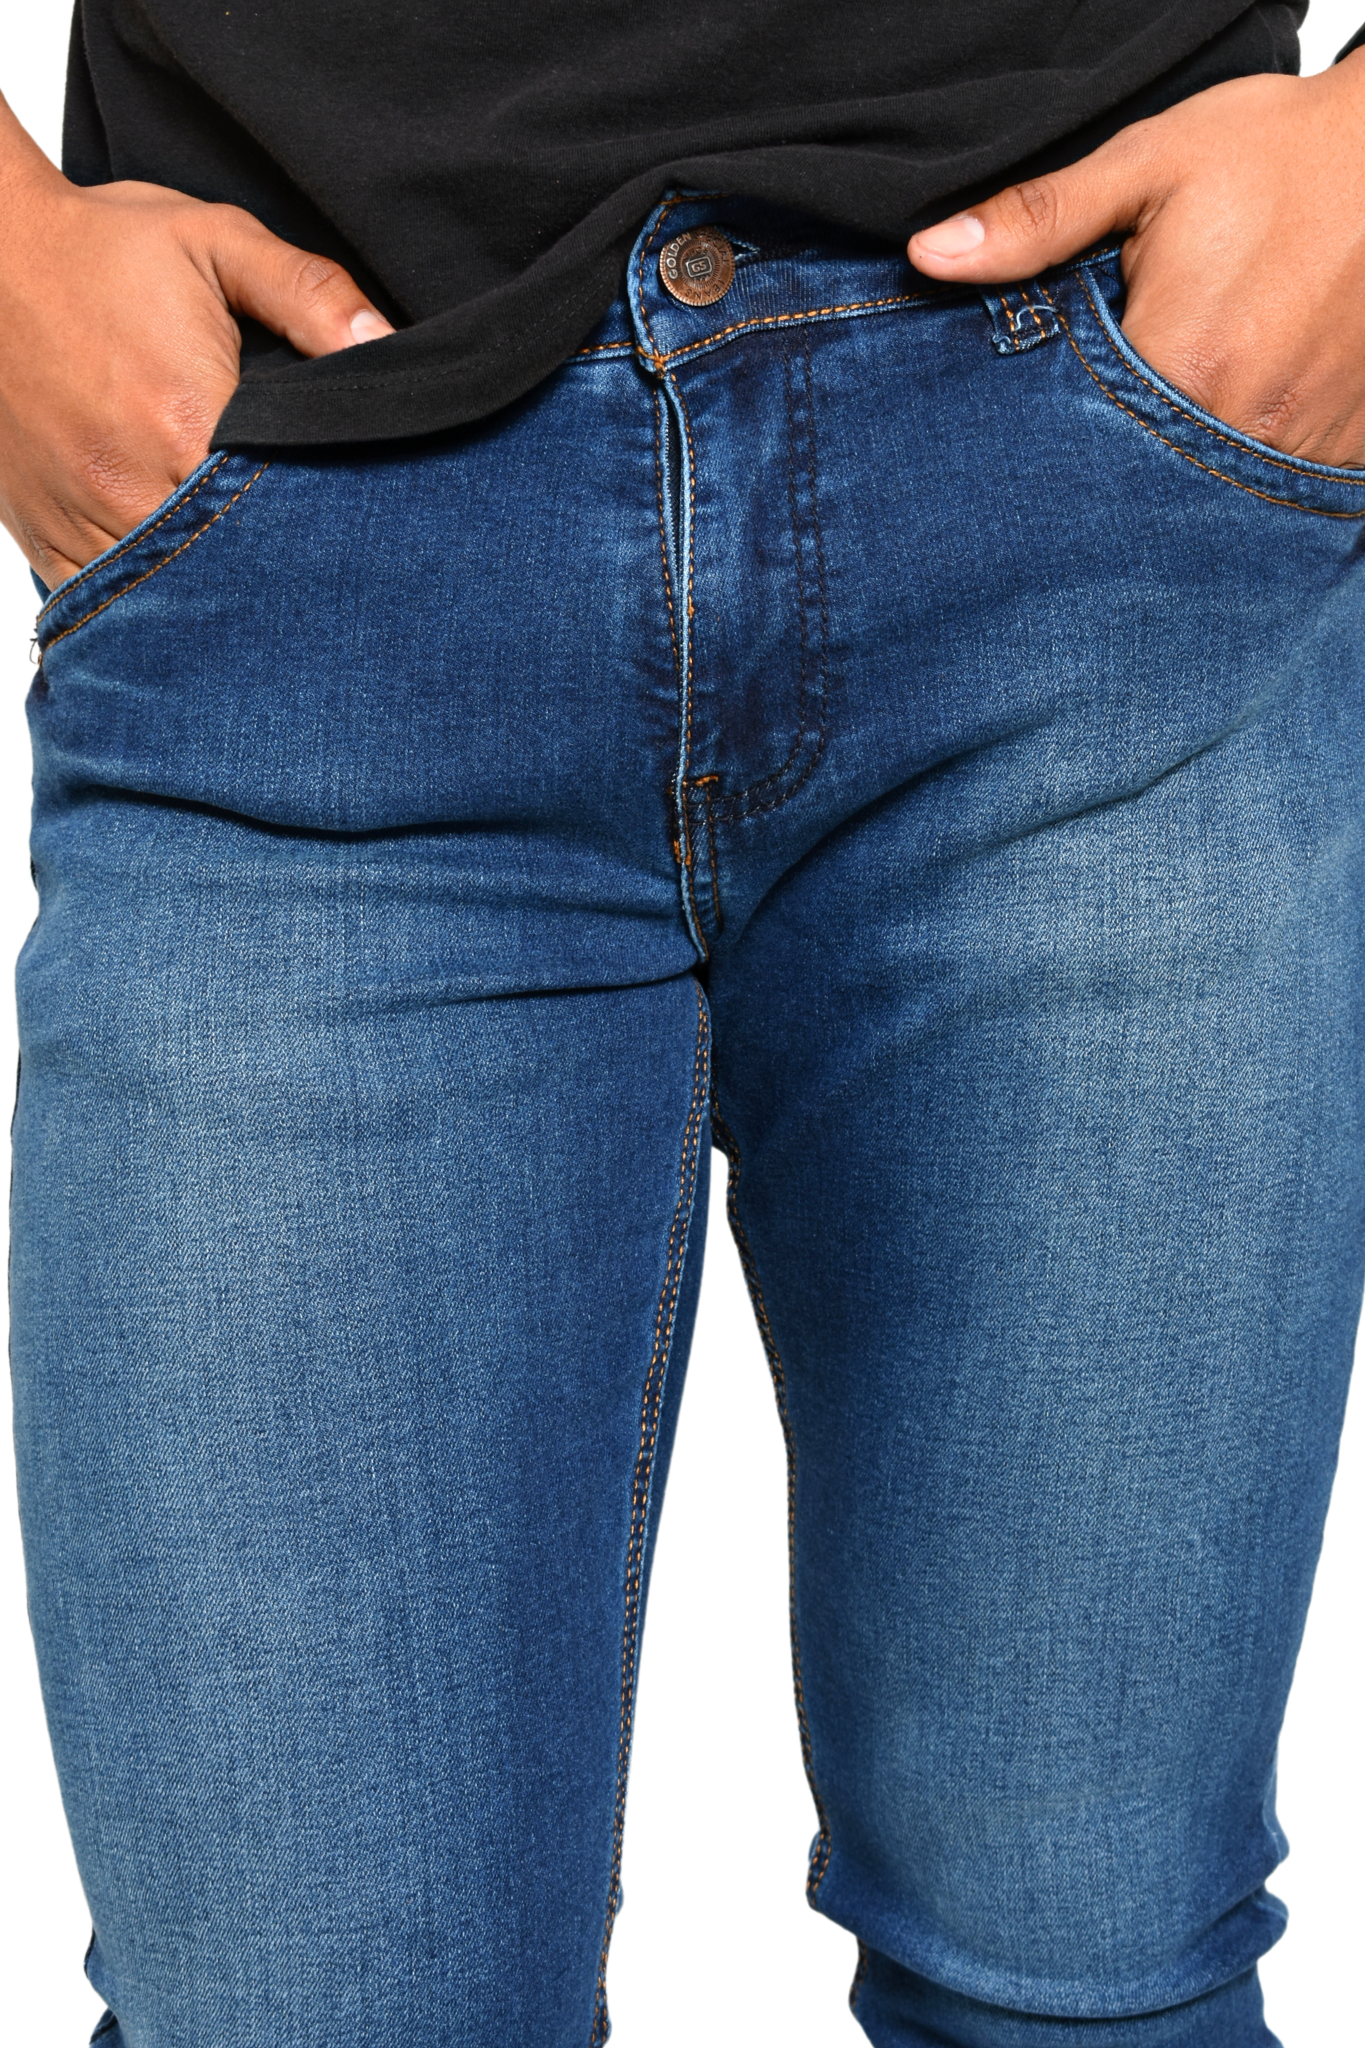 Pantalón de Mezclilla Azul Detalle Etiqueta ''Nex 7'' Bolsillo